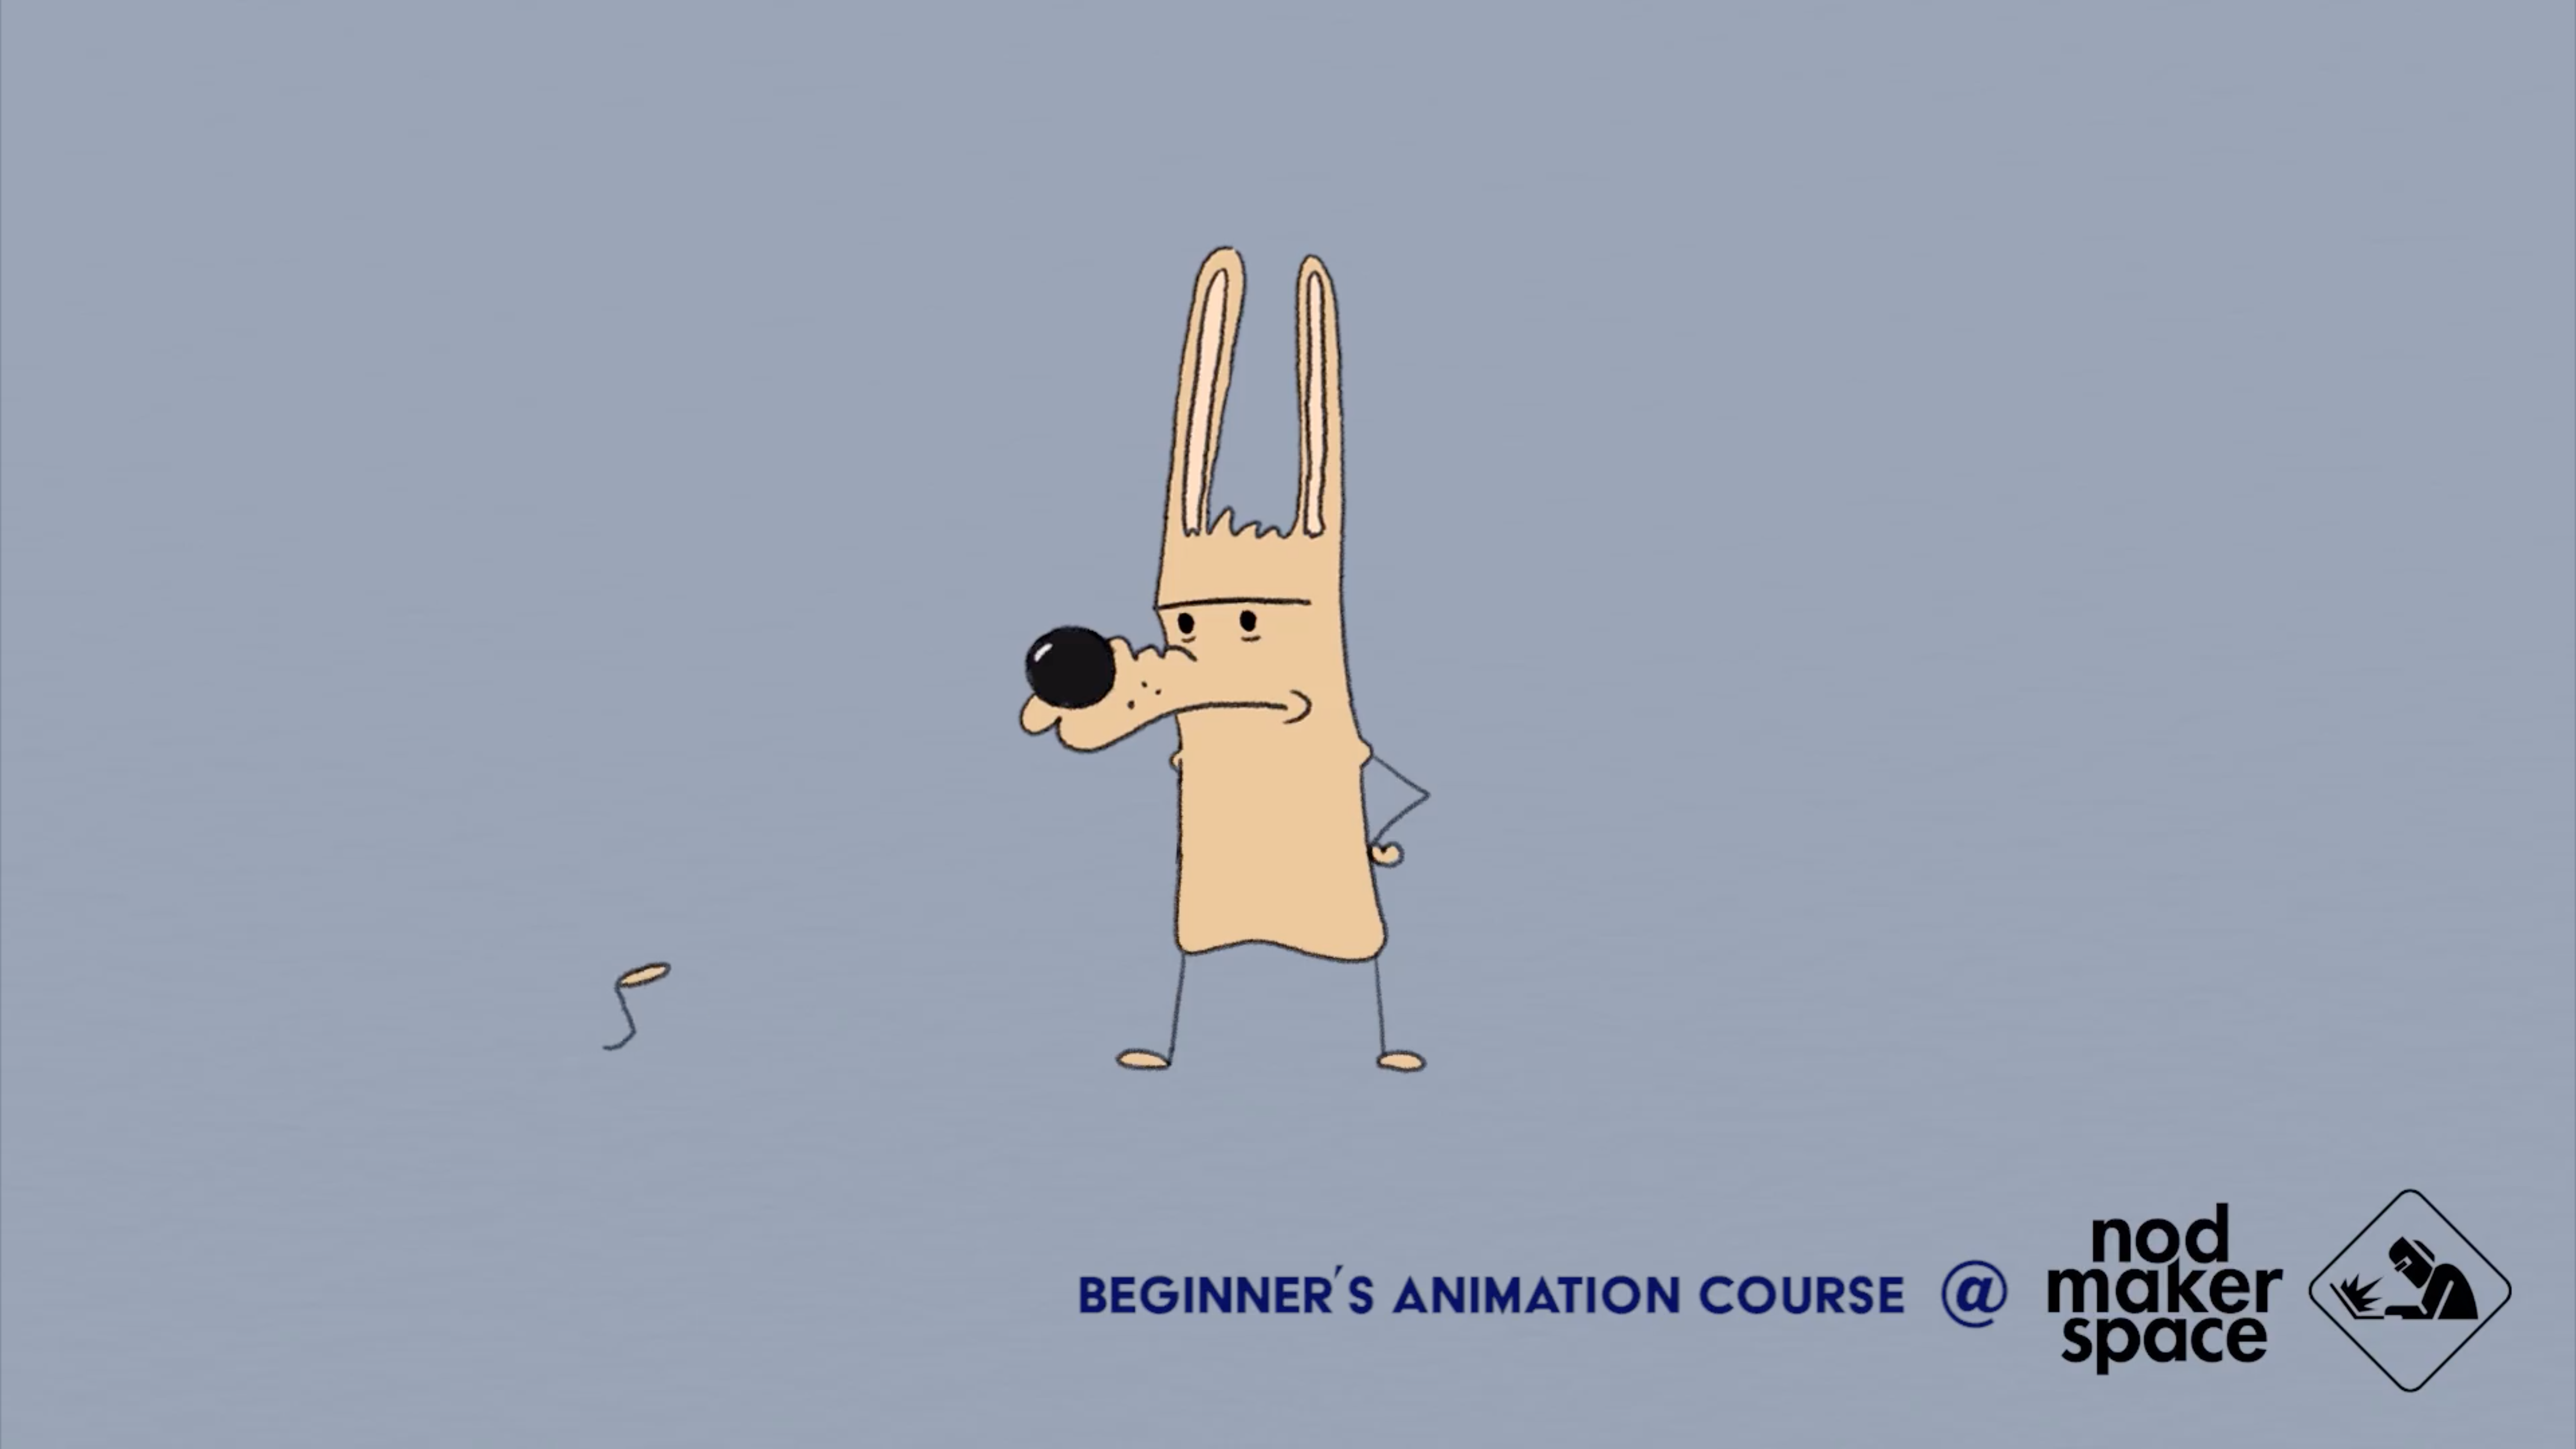 Curs de animație 2D pentru începători, cu Skeptic Dog